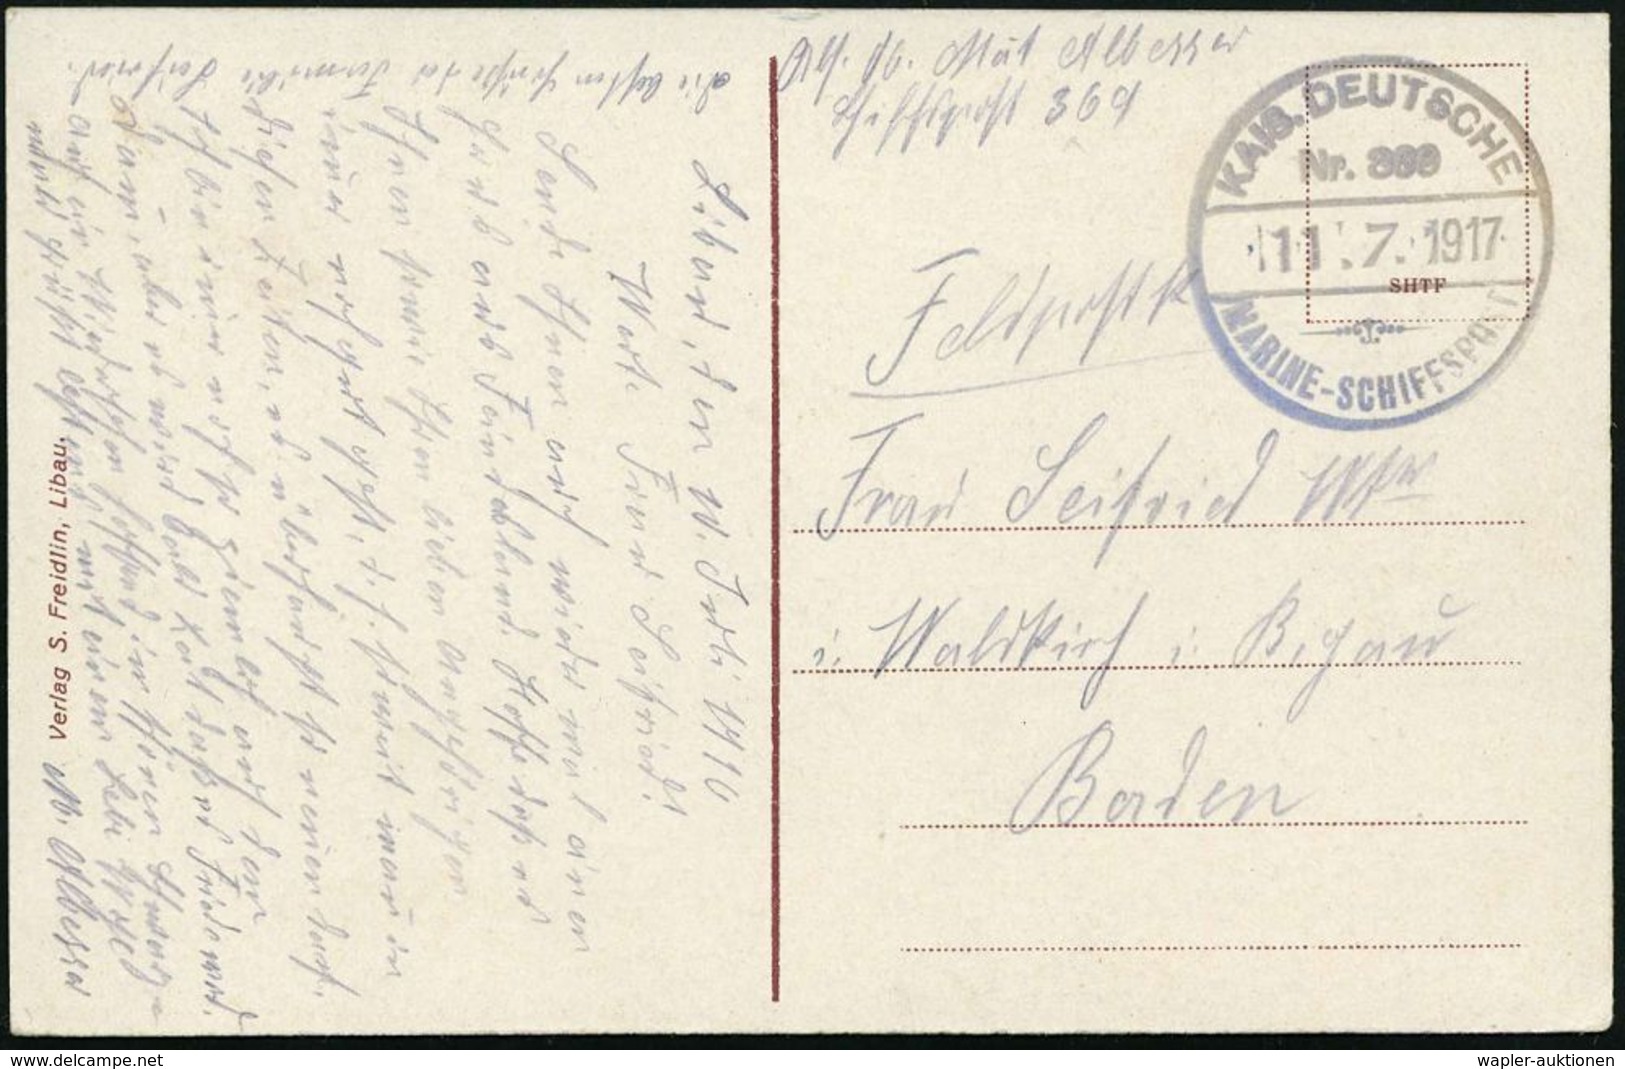 DEUTSCHES REICH 1917 (11.7.) Provis. Gummi-1K-Brücken-Briefstempel.: KAIS. DEUTSCHE/Nr. 369/MARINE-SCHIFFSPOST = Torpedo - Maritime